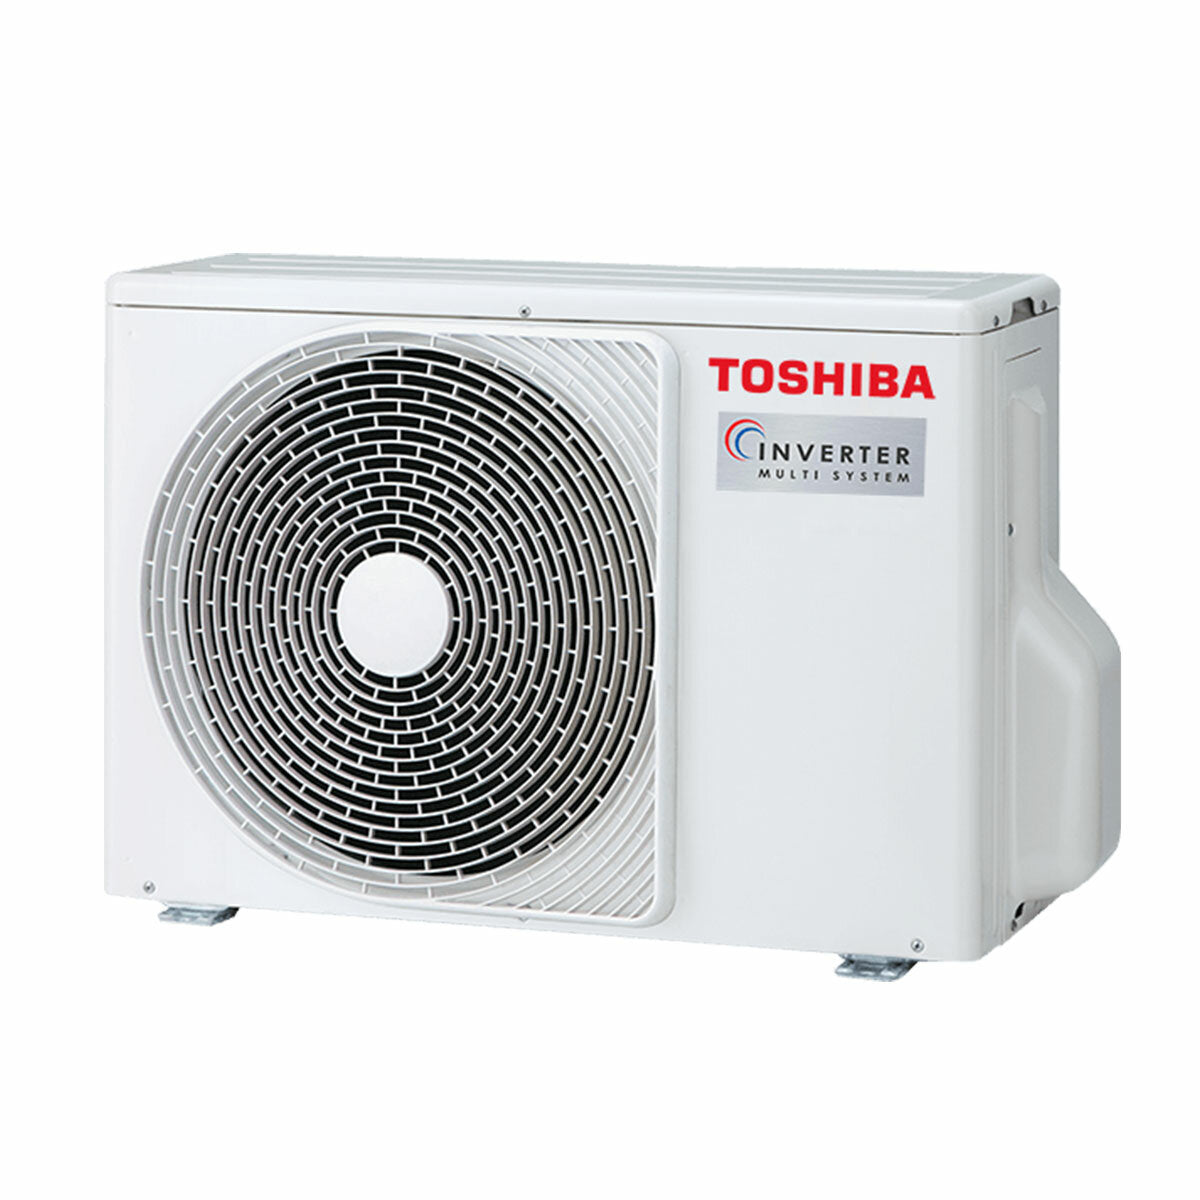 Climatiseur trial split Toshiba SHORAI Edge White 7000+9000+9000 BTU inverseur A+++ unité extérieure wifi 5,2 kW 